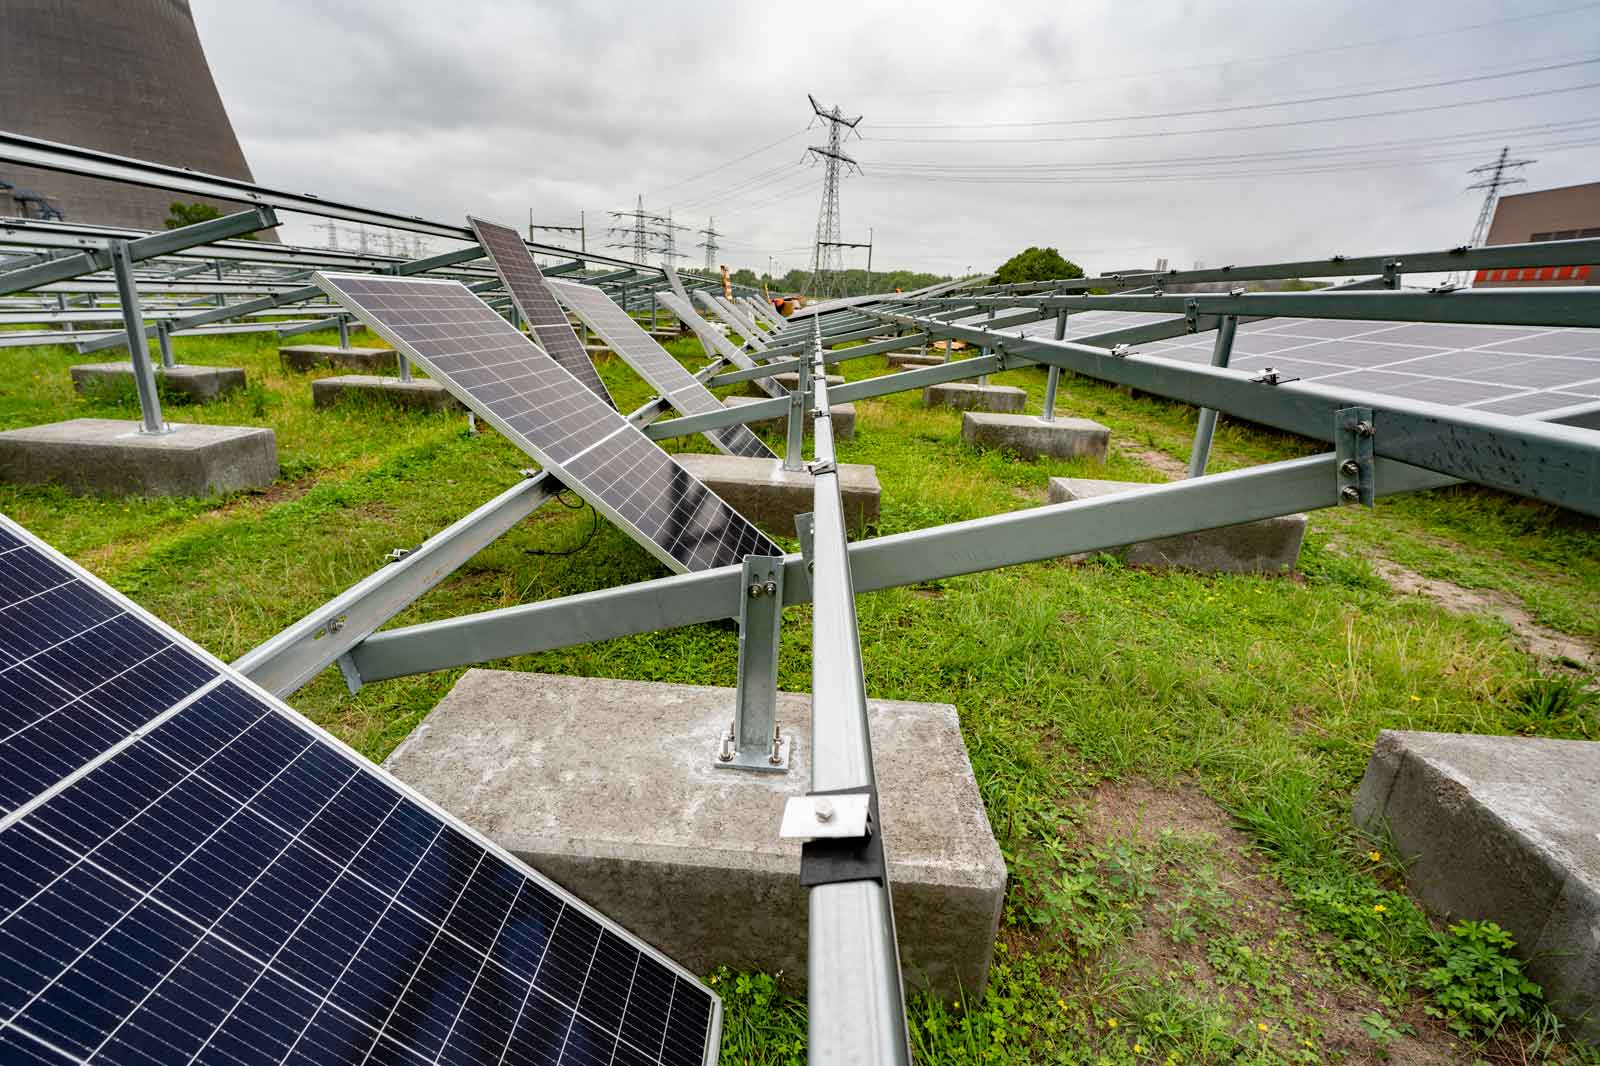 Fertiggestellte Paneele einer Solaranlage | Erneuerbare Energien entdecken bei RWE